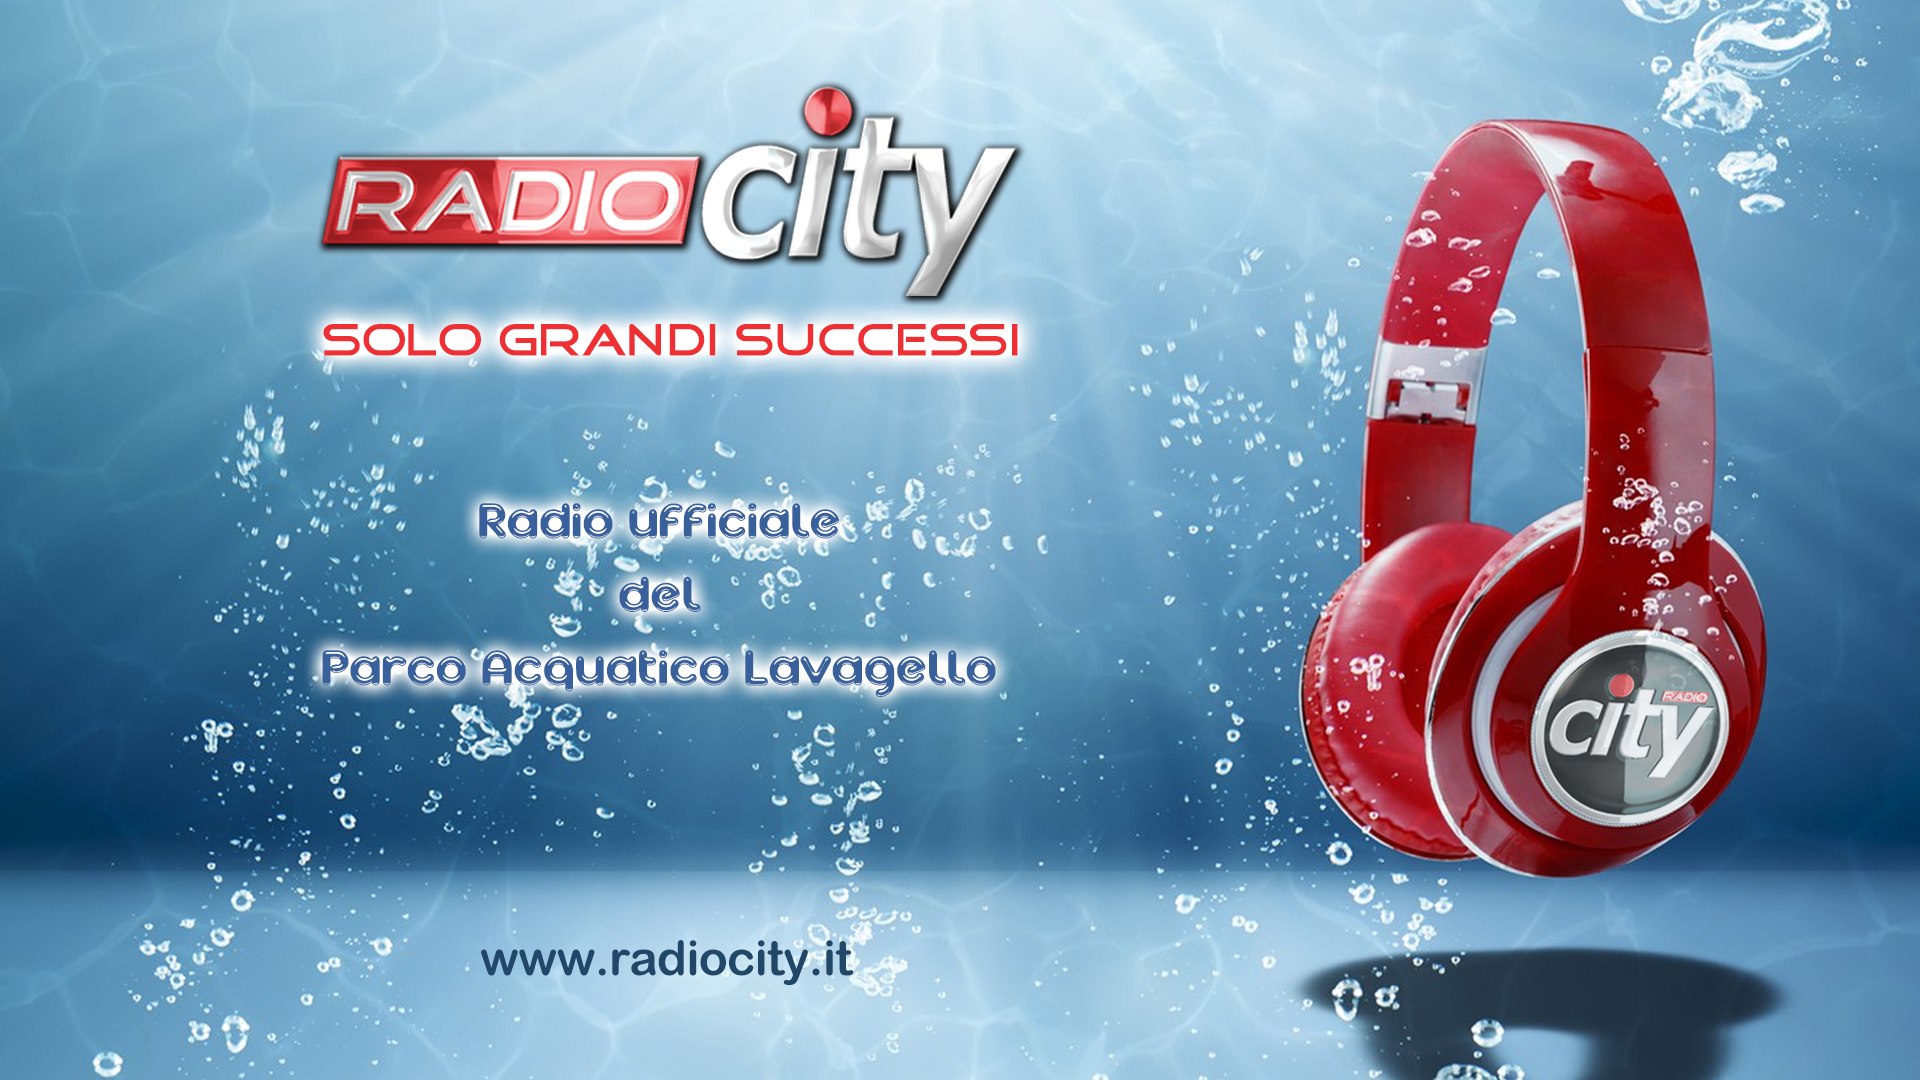 RADIO CITY - SOLO GRANDI SUCCESSI